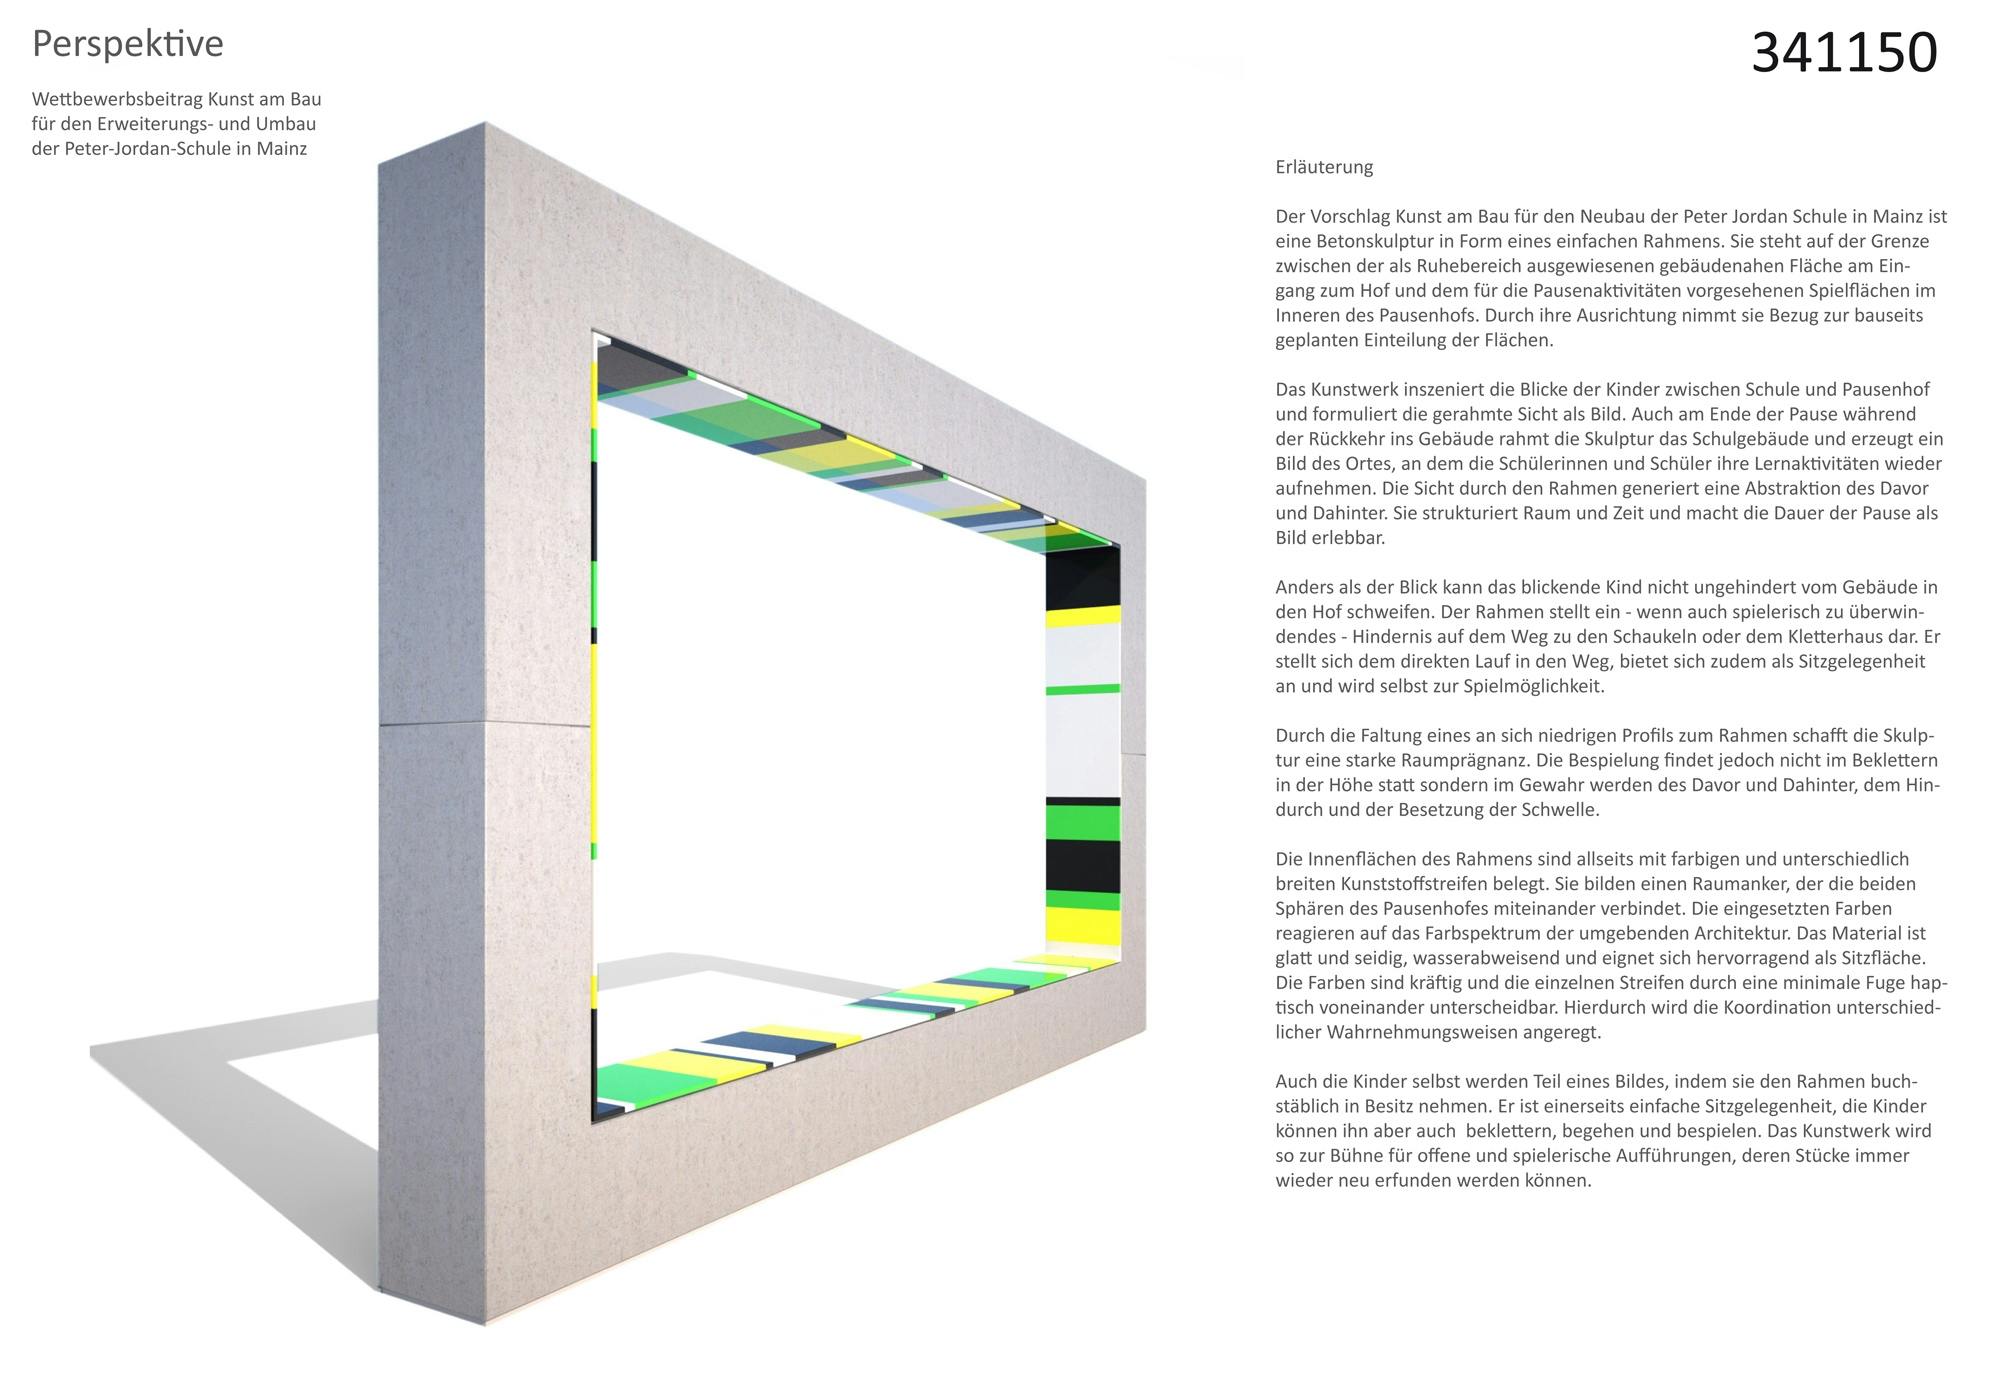 Perspektive 2017
Rahmenförmige Skulptur aus Betonfertigteilen,
farbige HDPE Platten